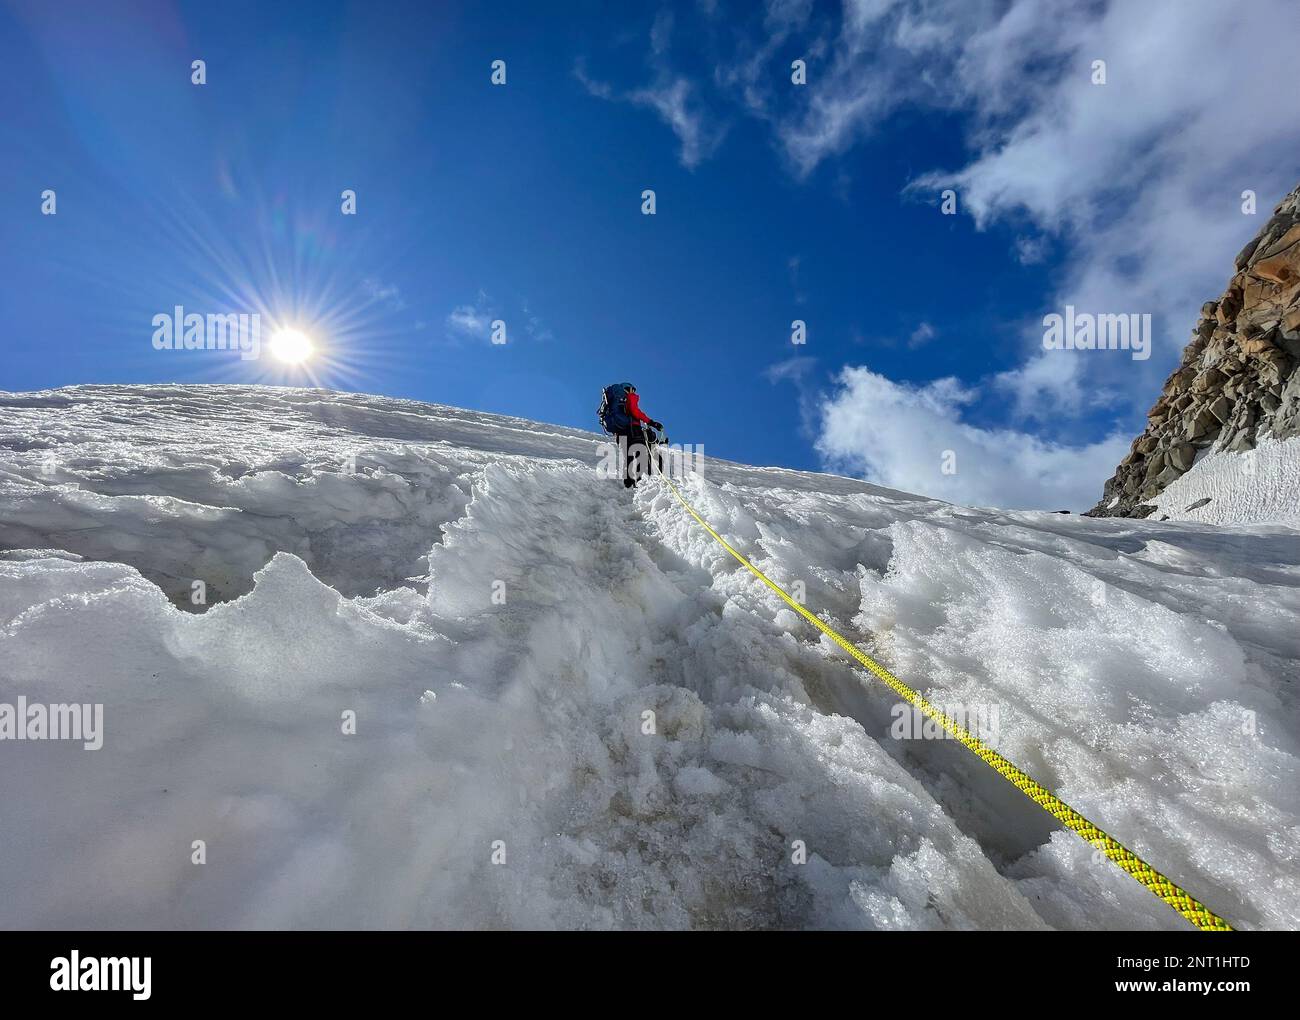 Deux grimpeurs grimpant en montée sur une pente enneigée en équipe de cordage le jour ensoleillé sous le Mont blanc du Tacul 4248m, Alpes françaises, France. Sports, escalade, Mo Banque D'Images